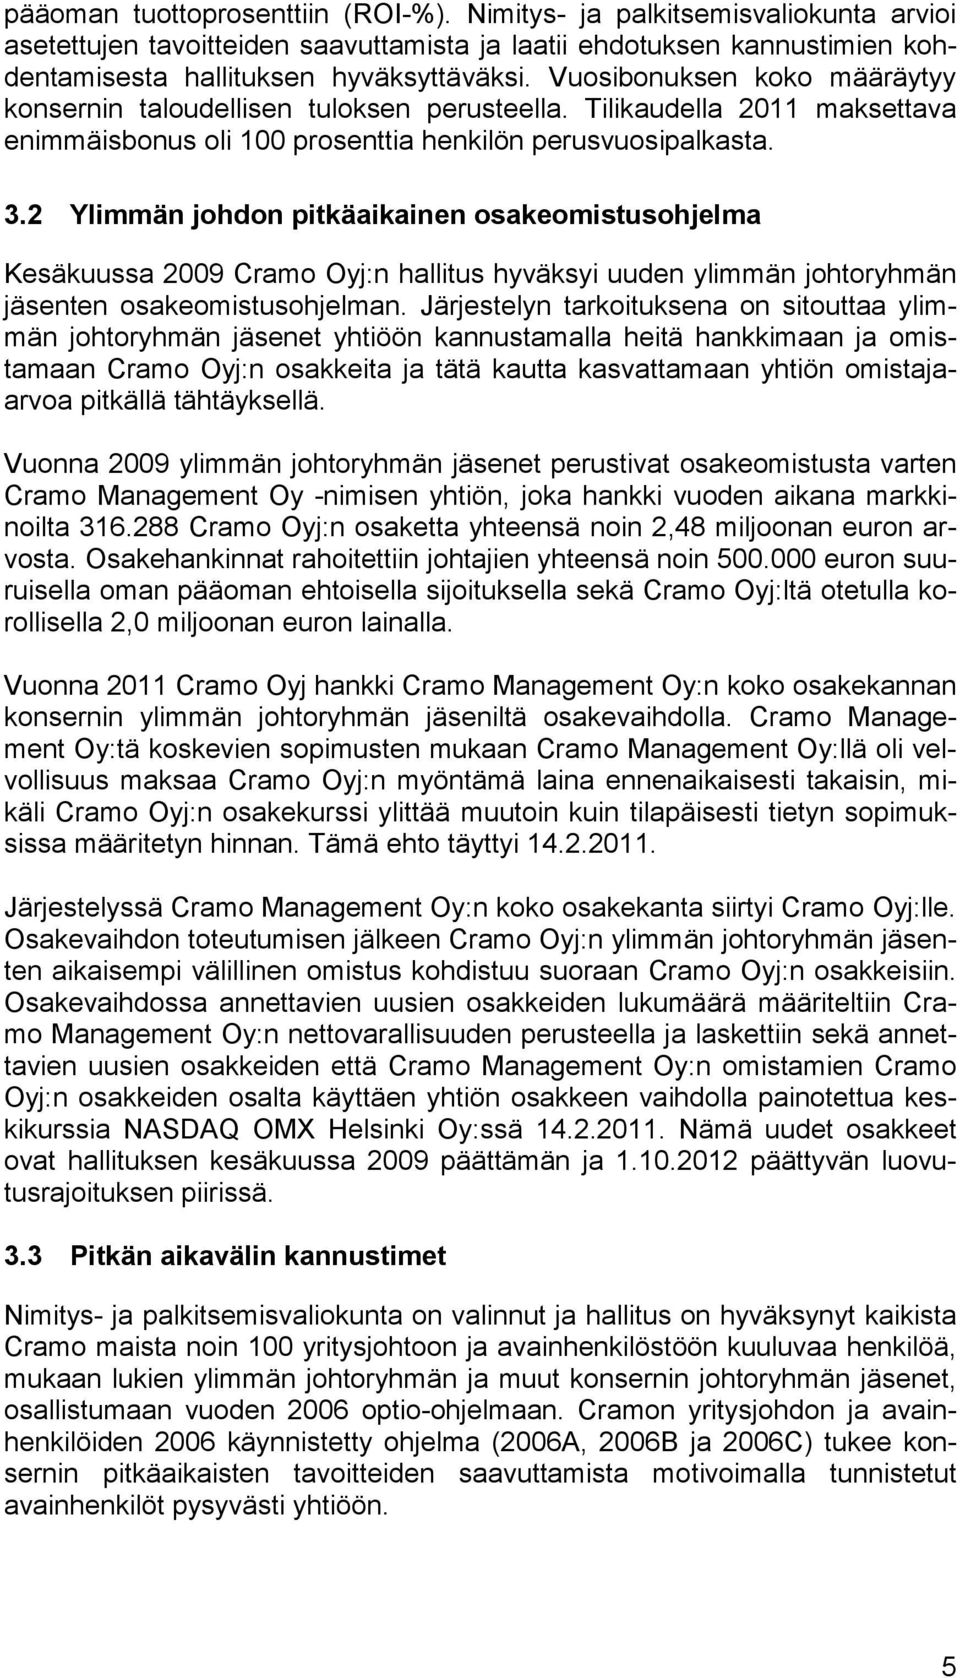 2 Ylimmän johdon pitkäaikainen osakeomistusohjelma Kesäkuussa 2009 Cramo Oyj:n hallitus hyväksyi uuden ylimmän johtoryhmän jäsenten osakeomistusohjelman.